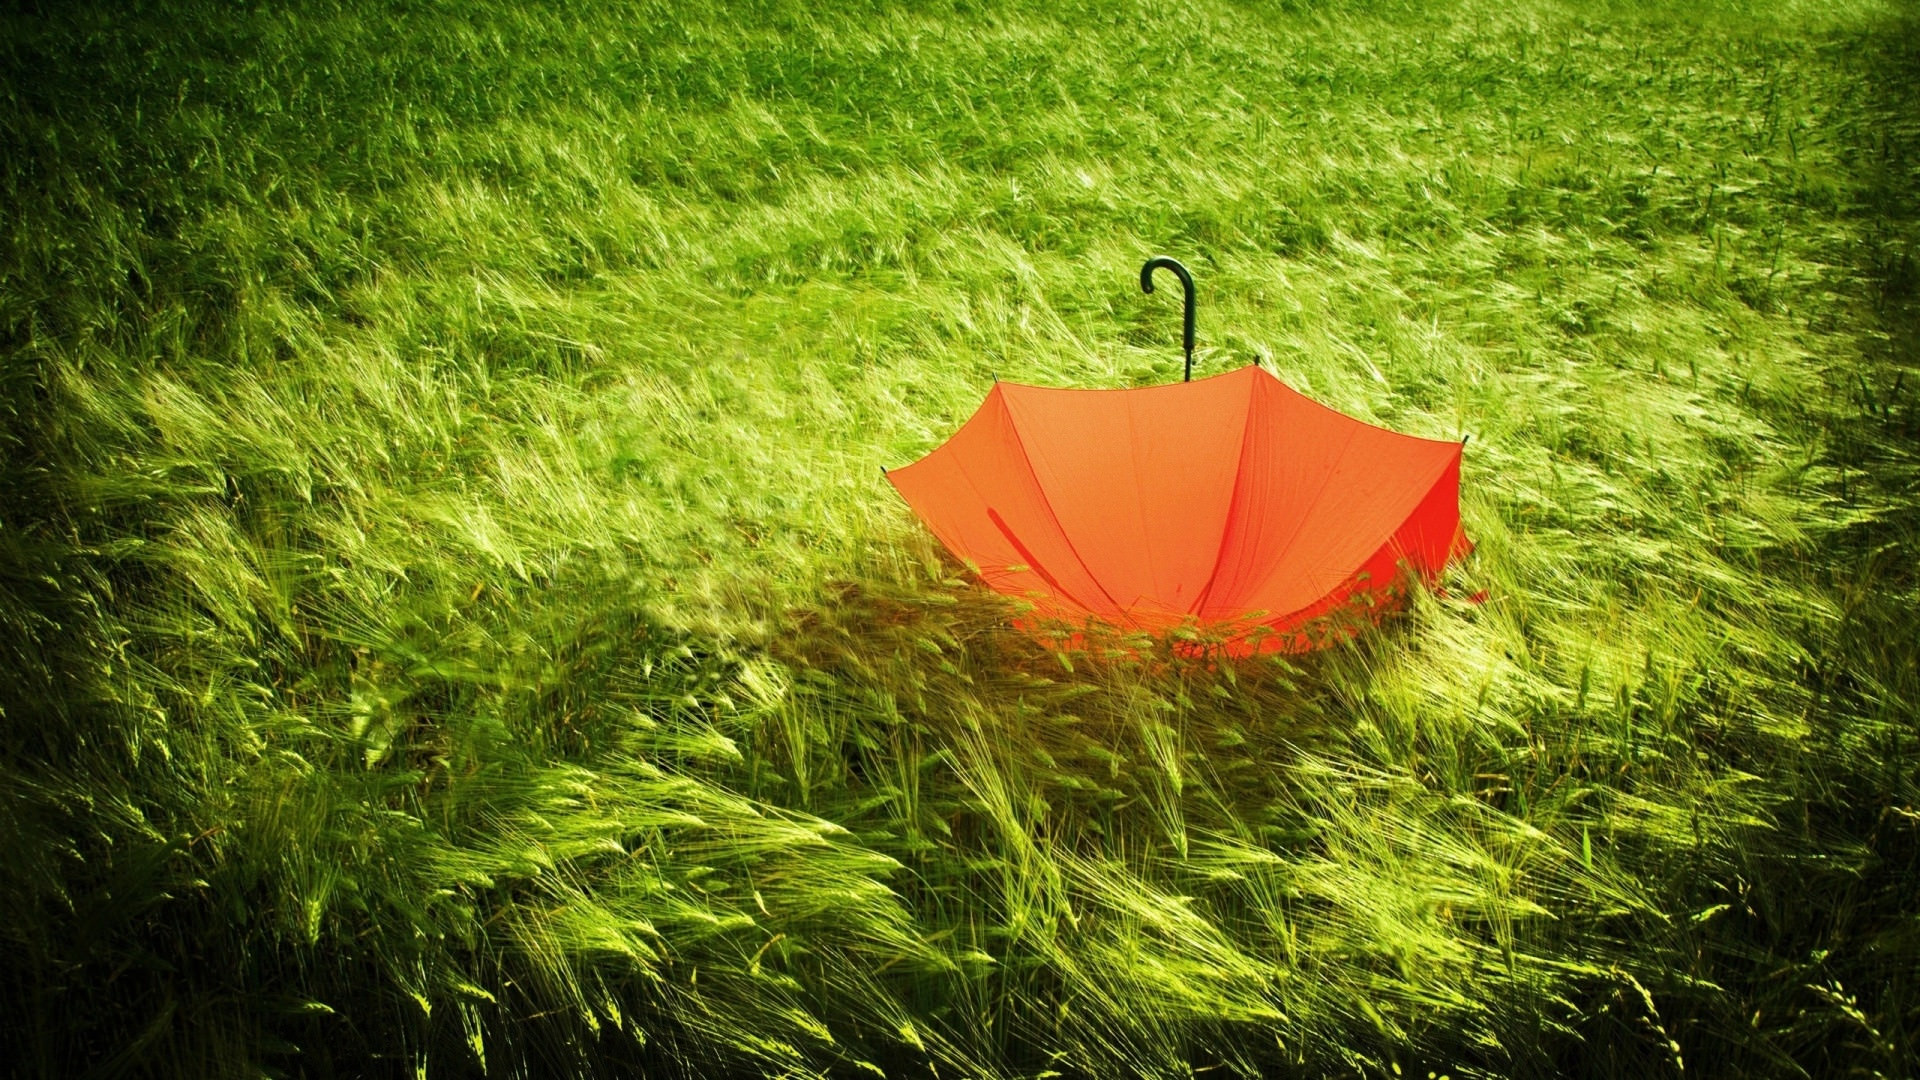 تصویر شاهکار چتر نارنجی در چمن های سبز فصل بهار